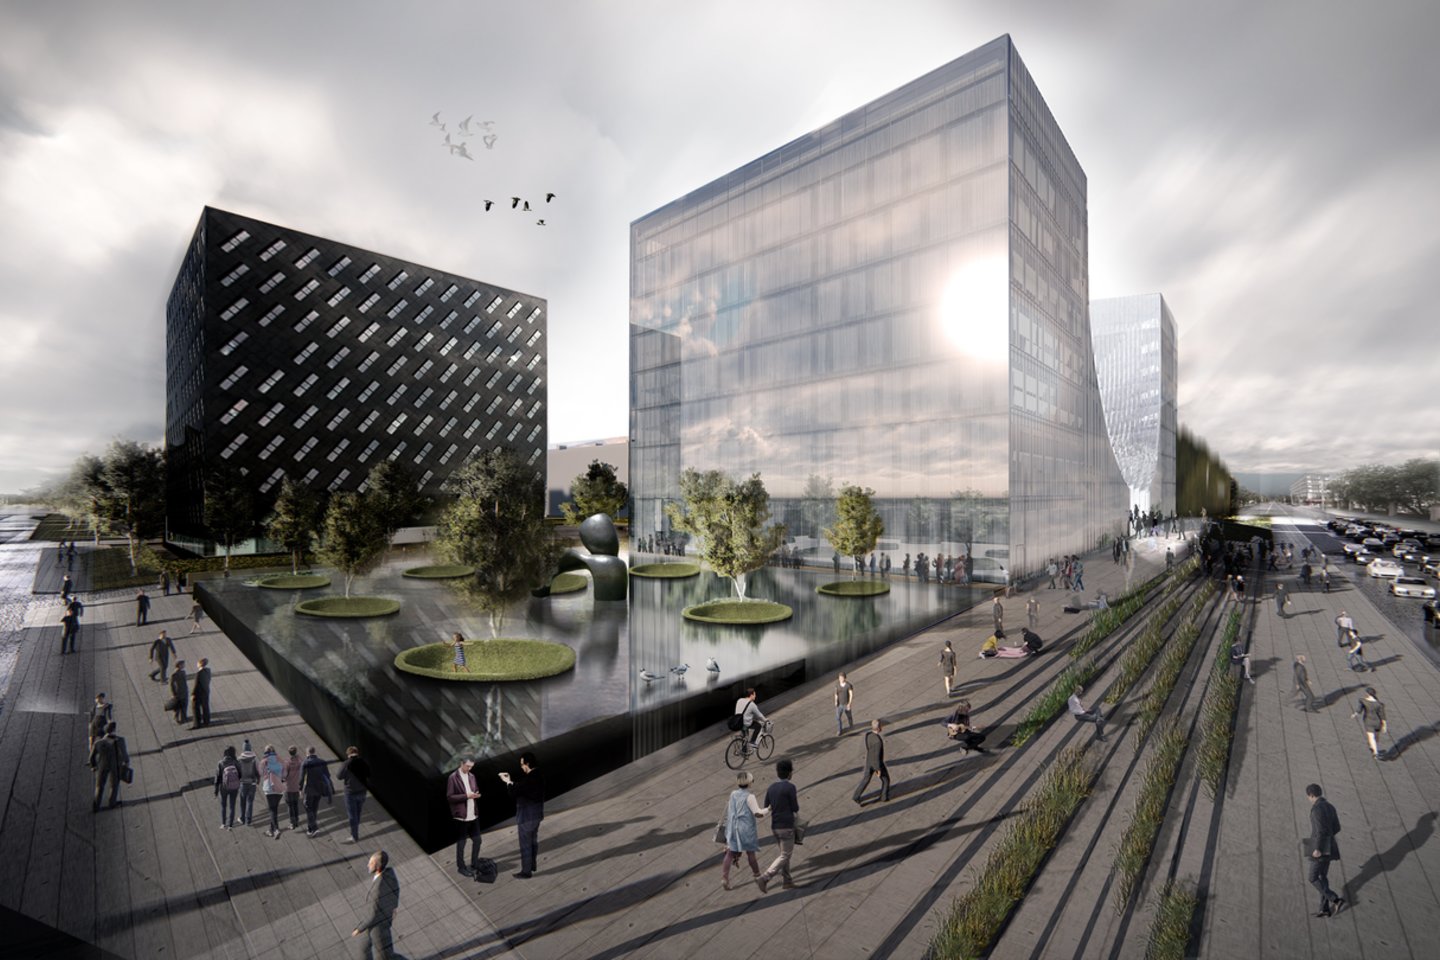  20,5 tūkst. kv. metrų ploto, 25-28 mln. eurų vertės pastato statybų pradžia planuojama 2019-ųjų viduryje.<br>„Cloud architektai“ vizualizacija